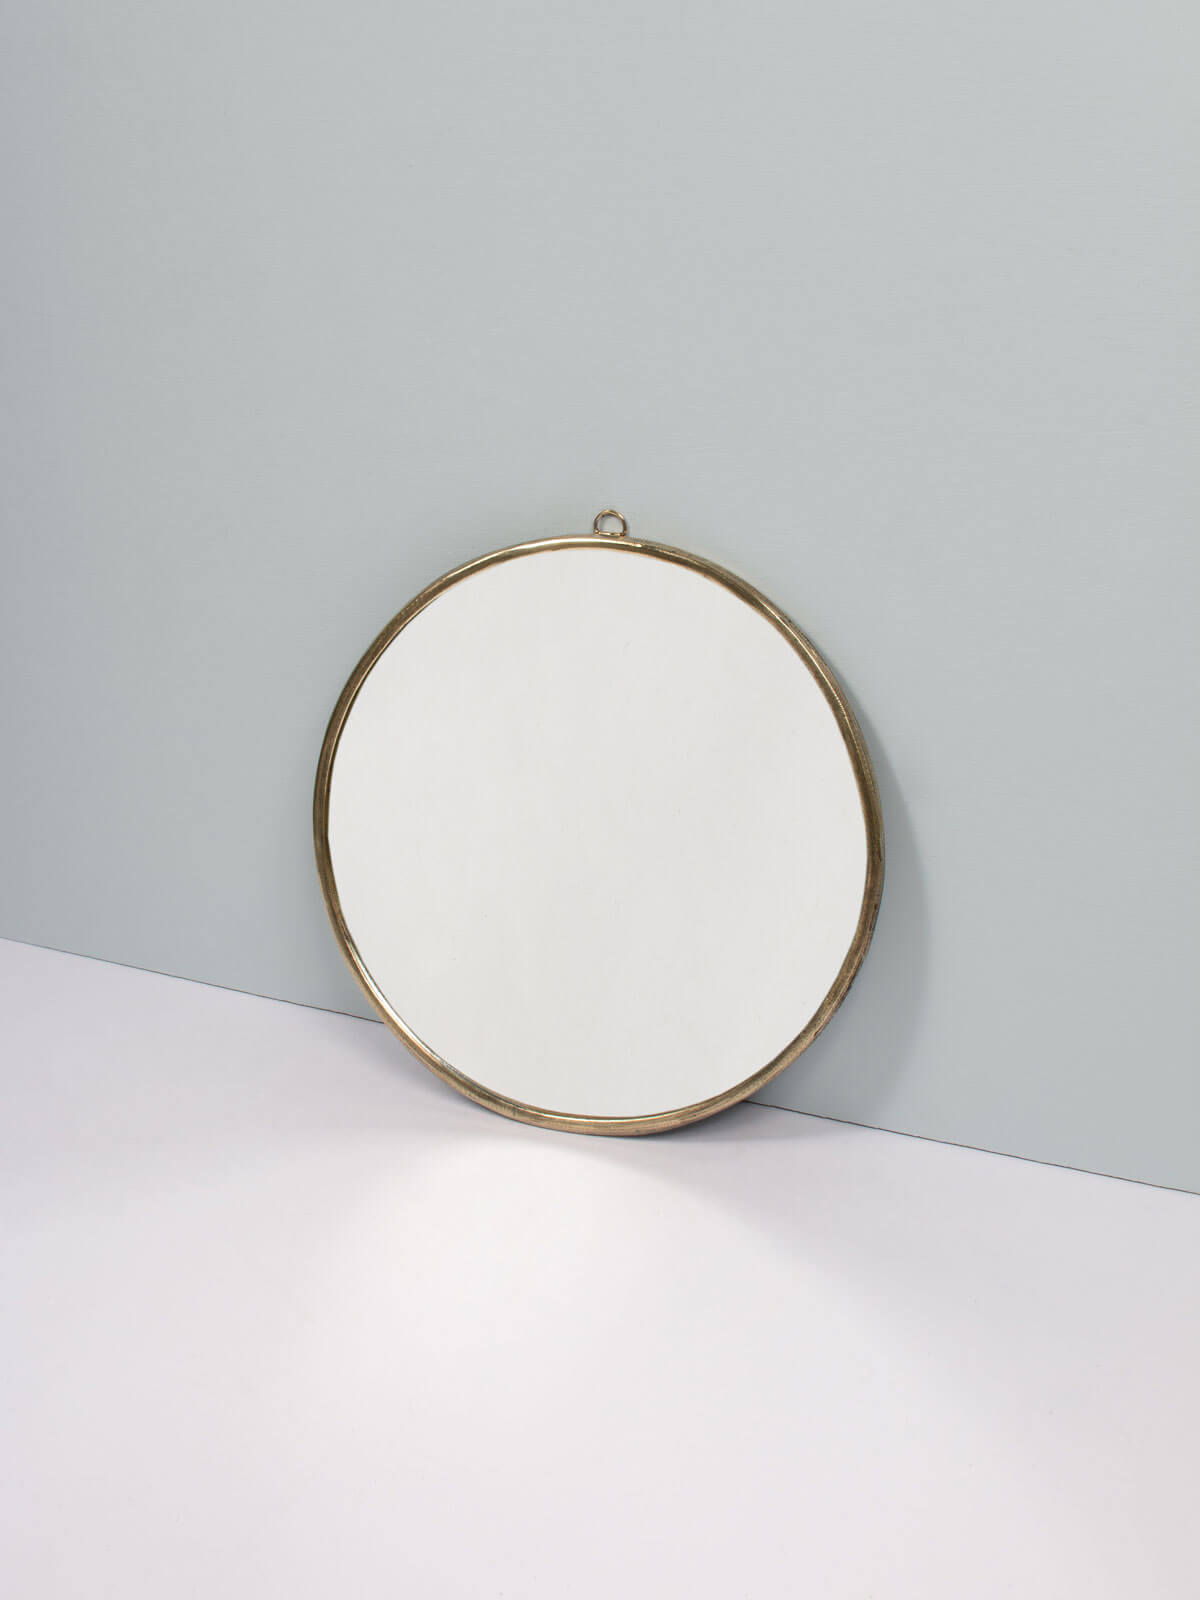 Moroccan Brass Frame Mirror, Round